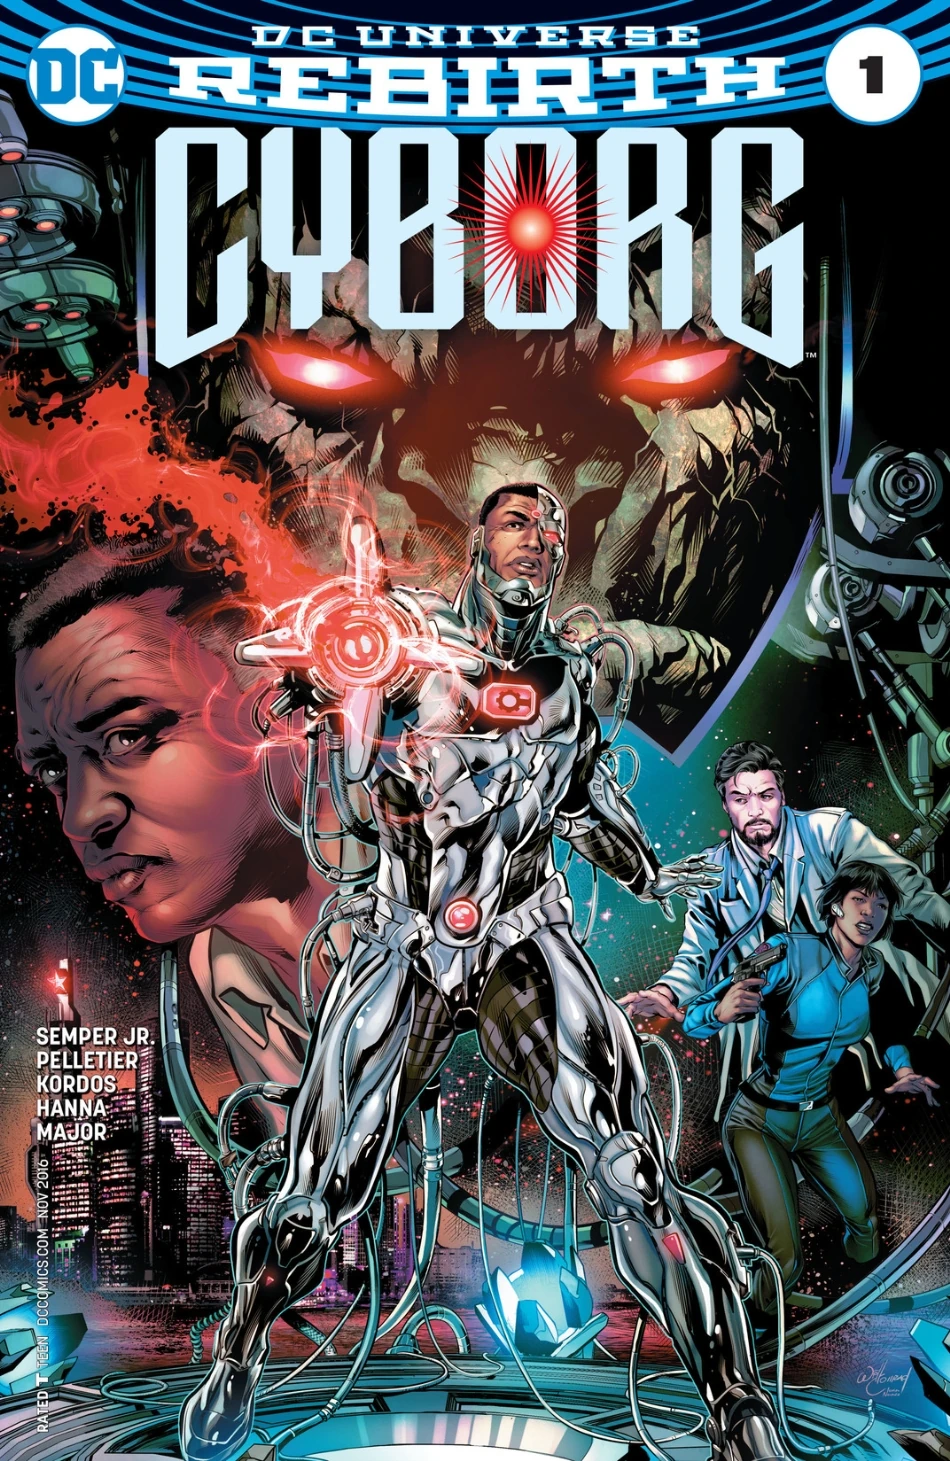 Portada de DC Universe Rebirth Cyborg en la que vemos en el centro a Cyborg, a la derecha su padre, a la izquierda un científico y una mujer con pistola y arriba una cabeza ominosa de algo de piedra con ojos rojos brillantes.